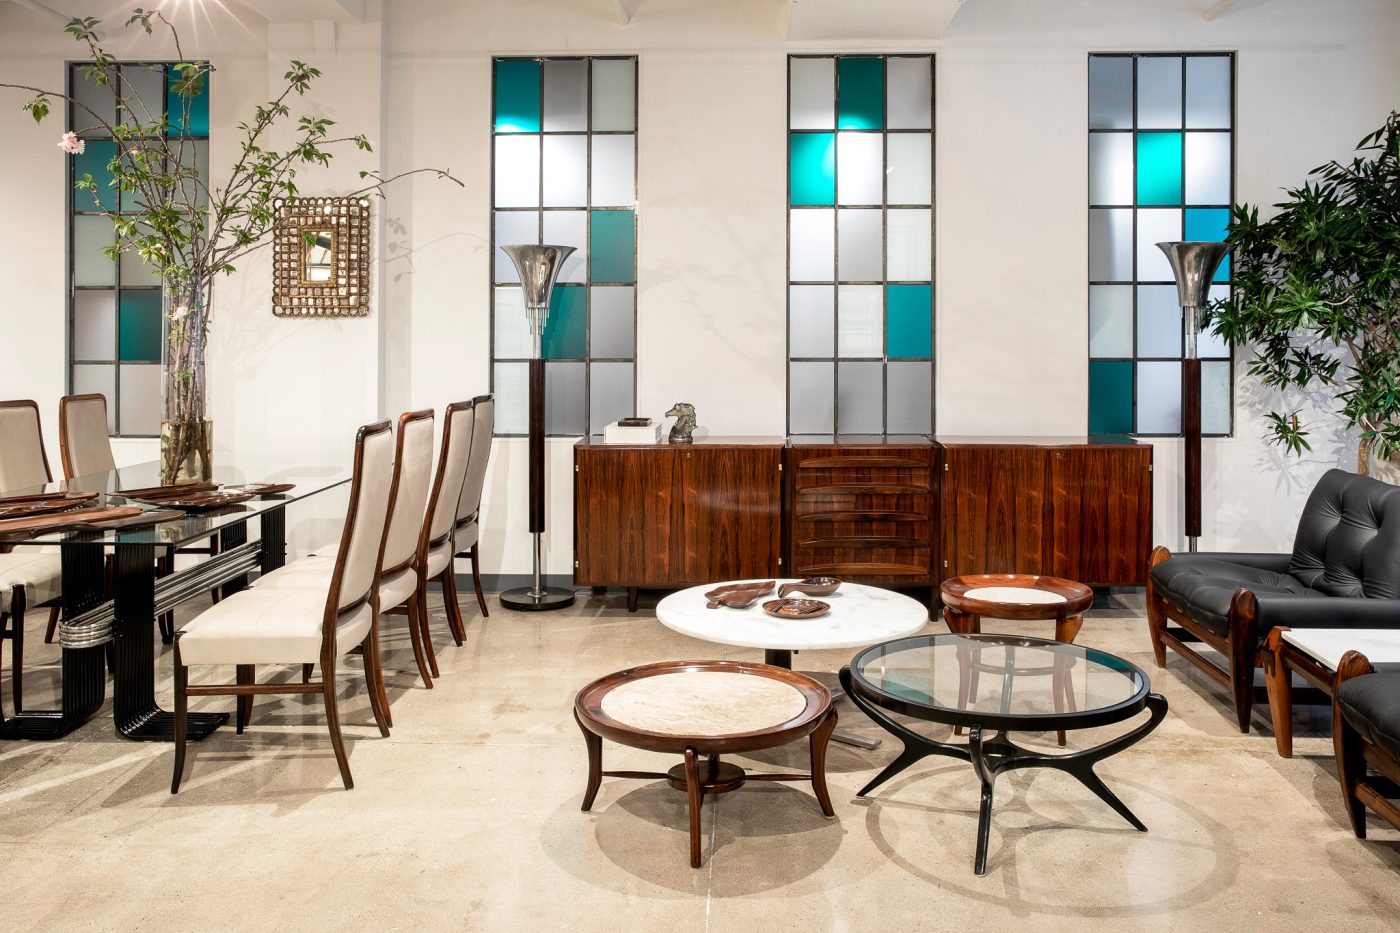 Brazilian modern furniture in Found Collectibles' Midtown Manhattan showroom